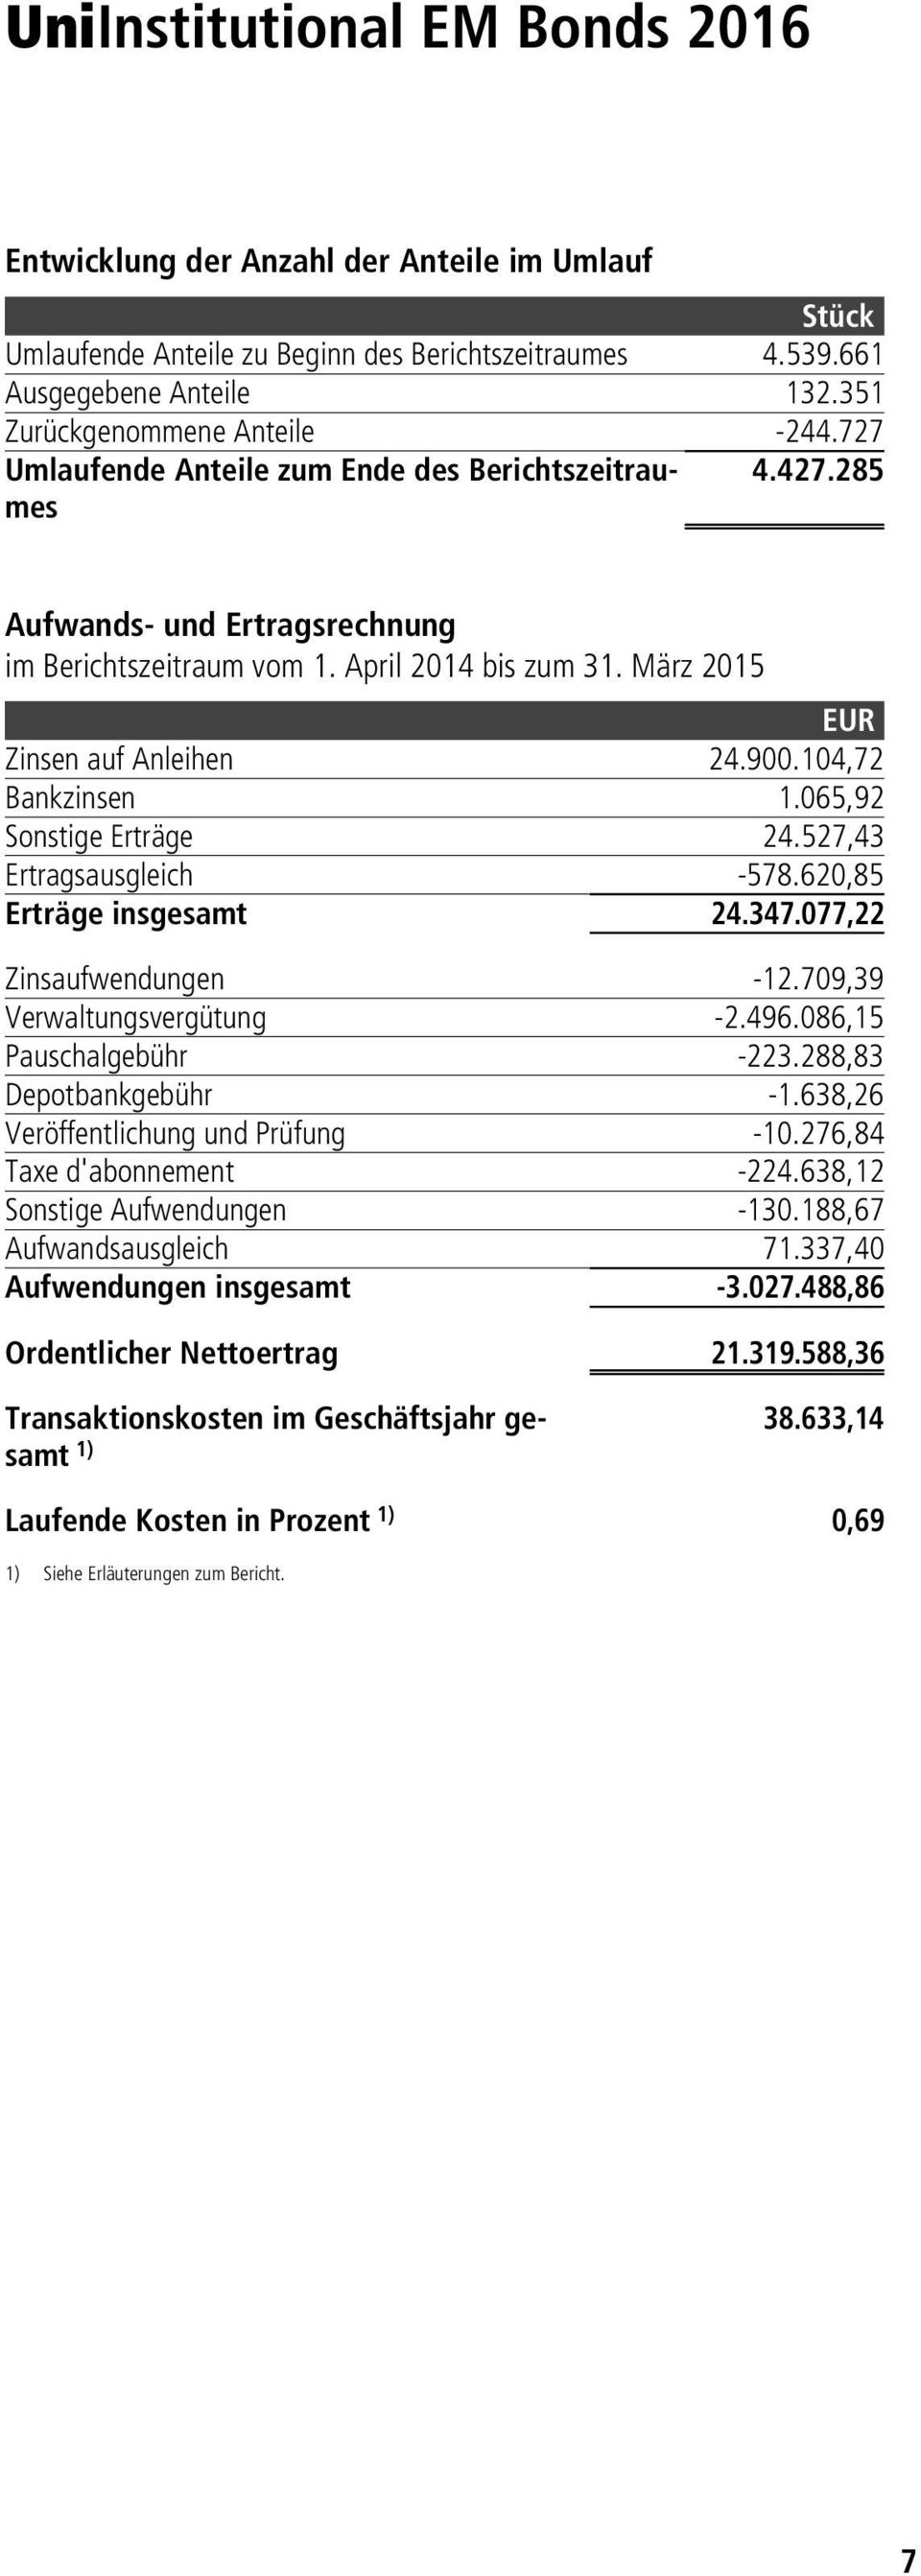 März 2015 EUR Zinsen auf Anleihen 24.900.104,72 Bankzinsen 1.065,92 Sonstige Erträge 24.527,43 Ertragsausgleich -578.620,85 Erträge insgesamt 24.347.077,22 Zinsaufwendungen -12.